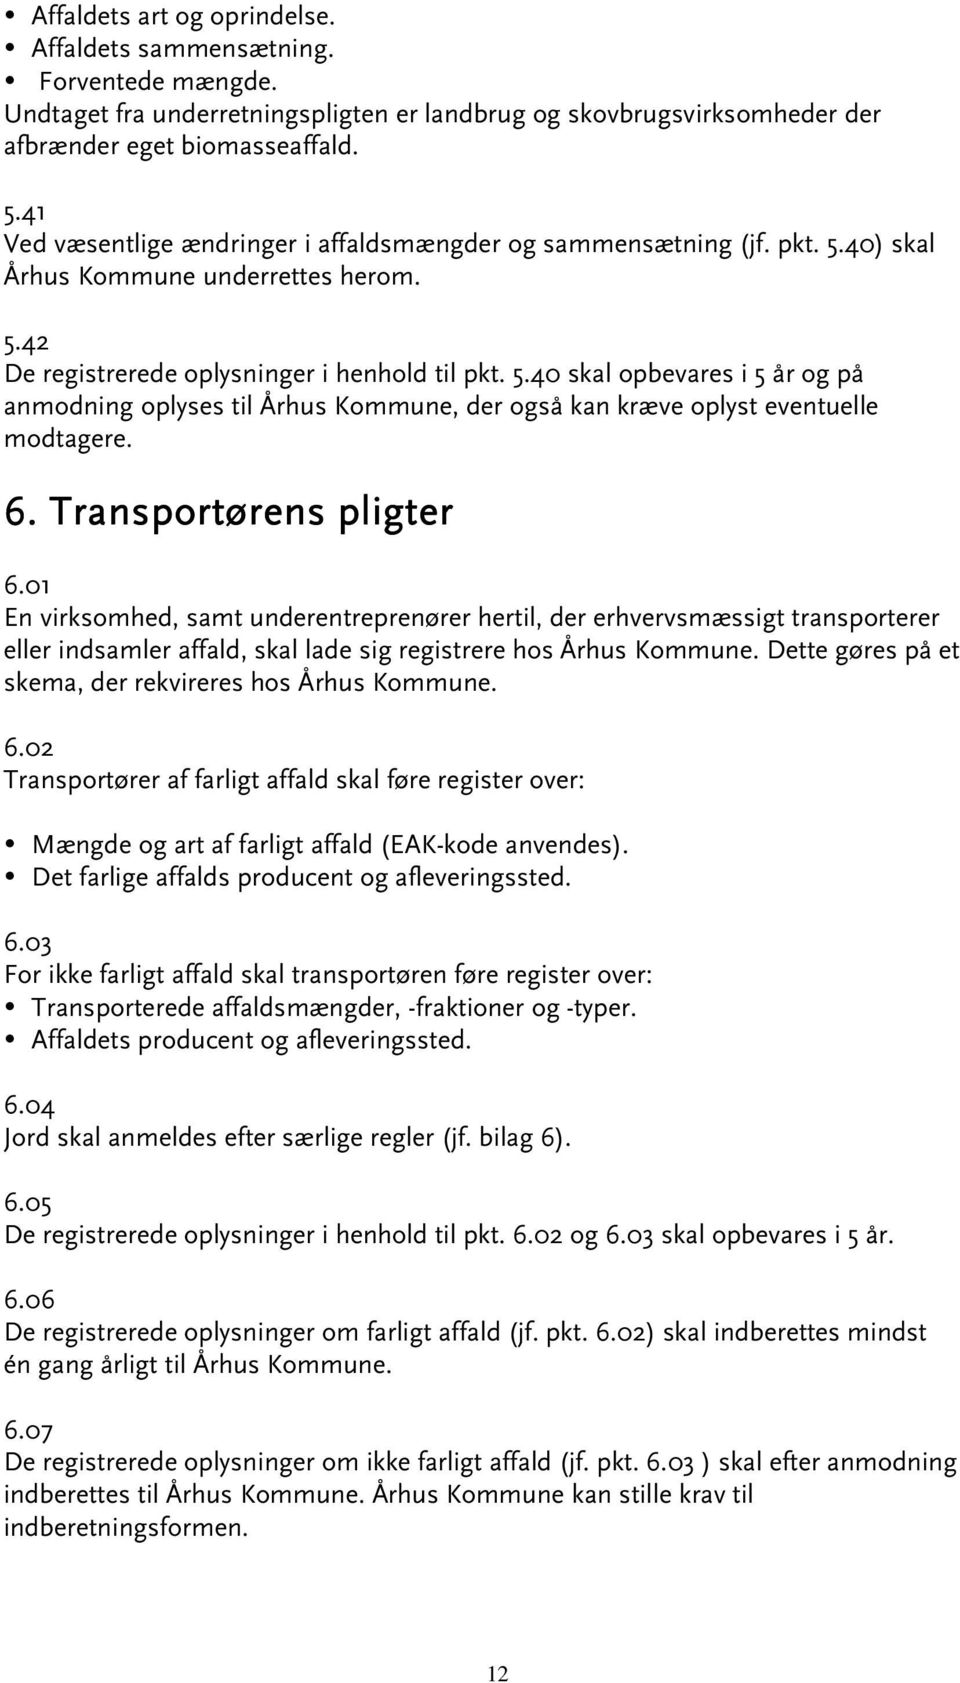 6. Transportørens pligter 6.01 En virksomhed, samt underentreprenører hertil, der erhvervsmæssigt transporterer eller indsamler affald, skal lade sig registrere hos Århus Kommune.